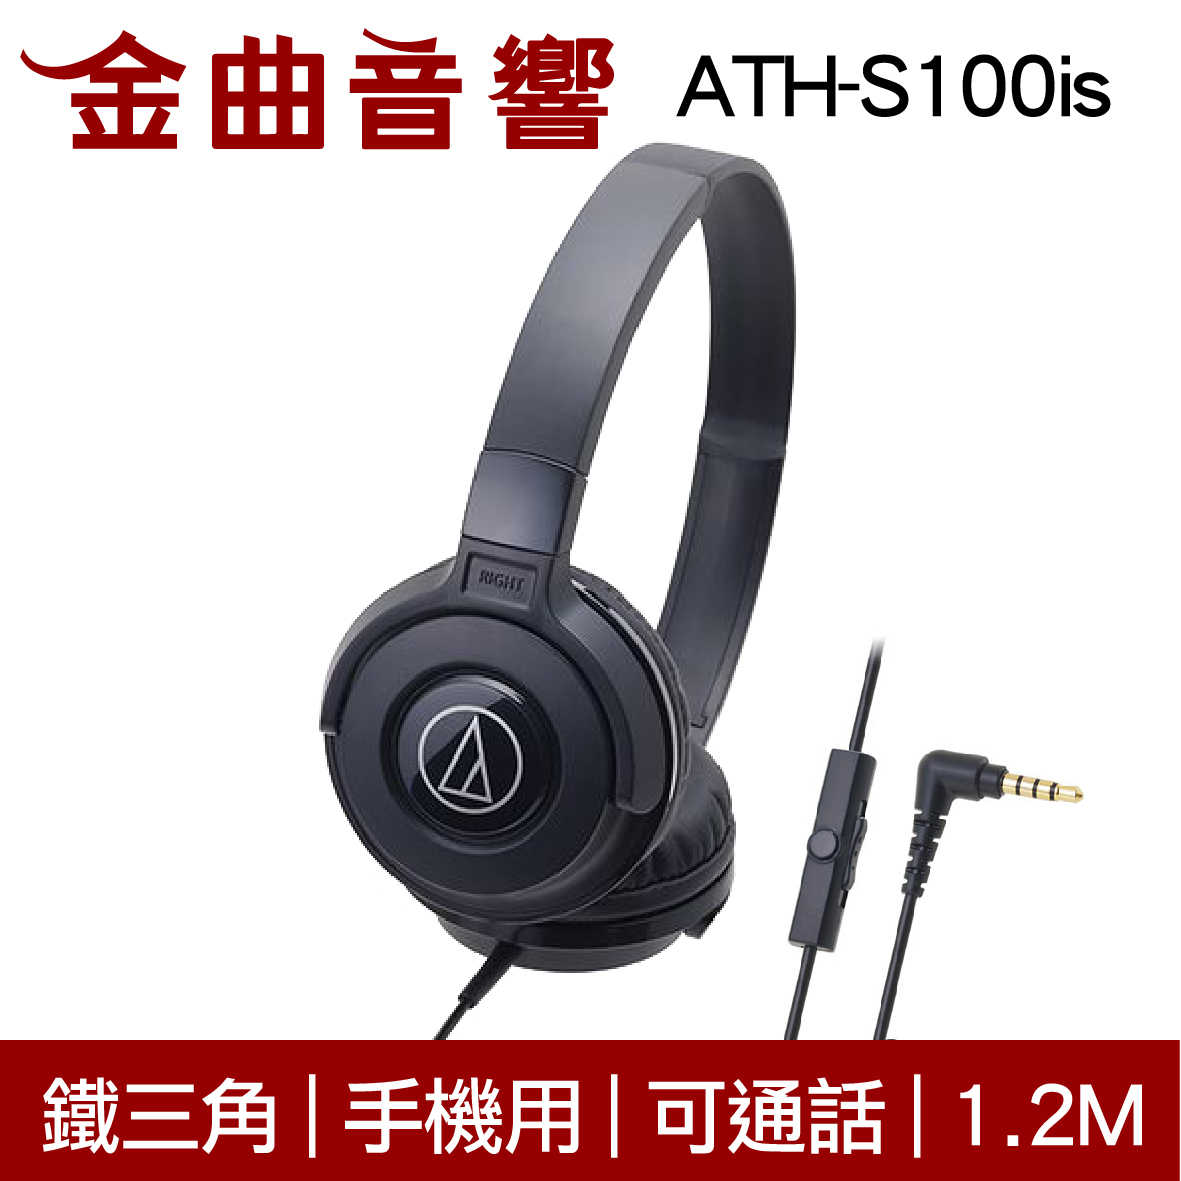 鐵三角 ATH-S100is 黑藍色 兒童耳機 大人 皆適用 耳罩式 有麥克風版 IOS/安卓適用 | 金曲音響